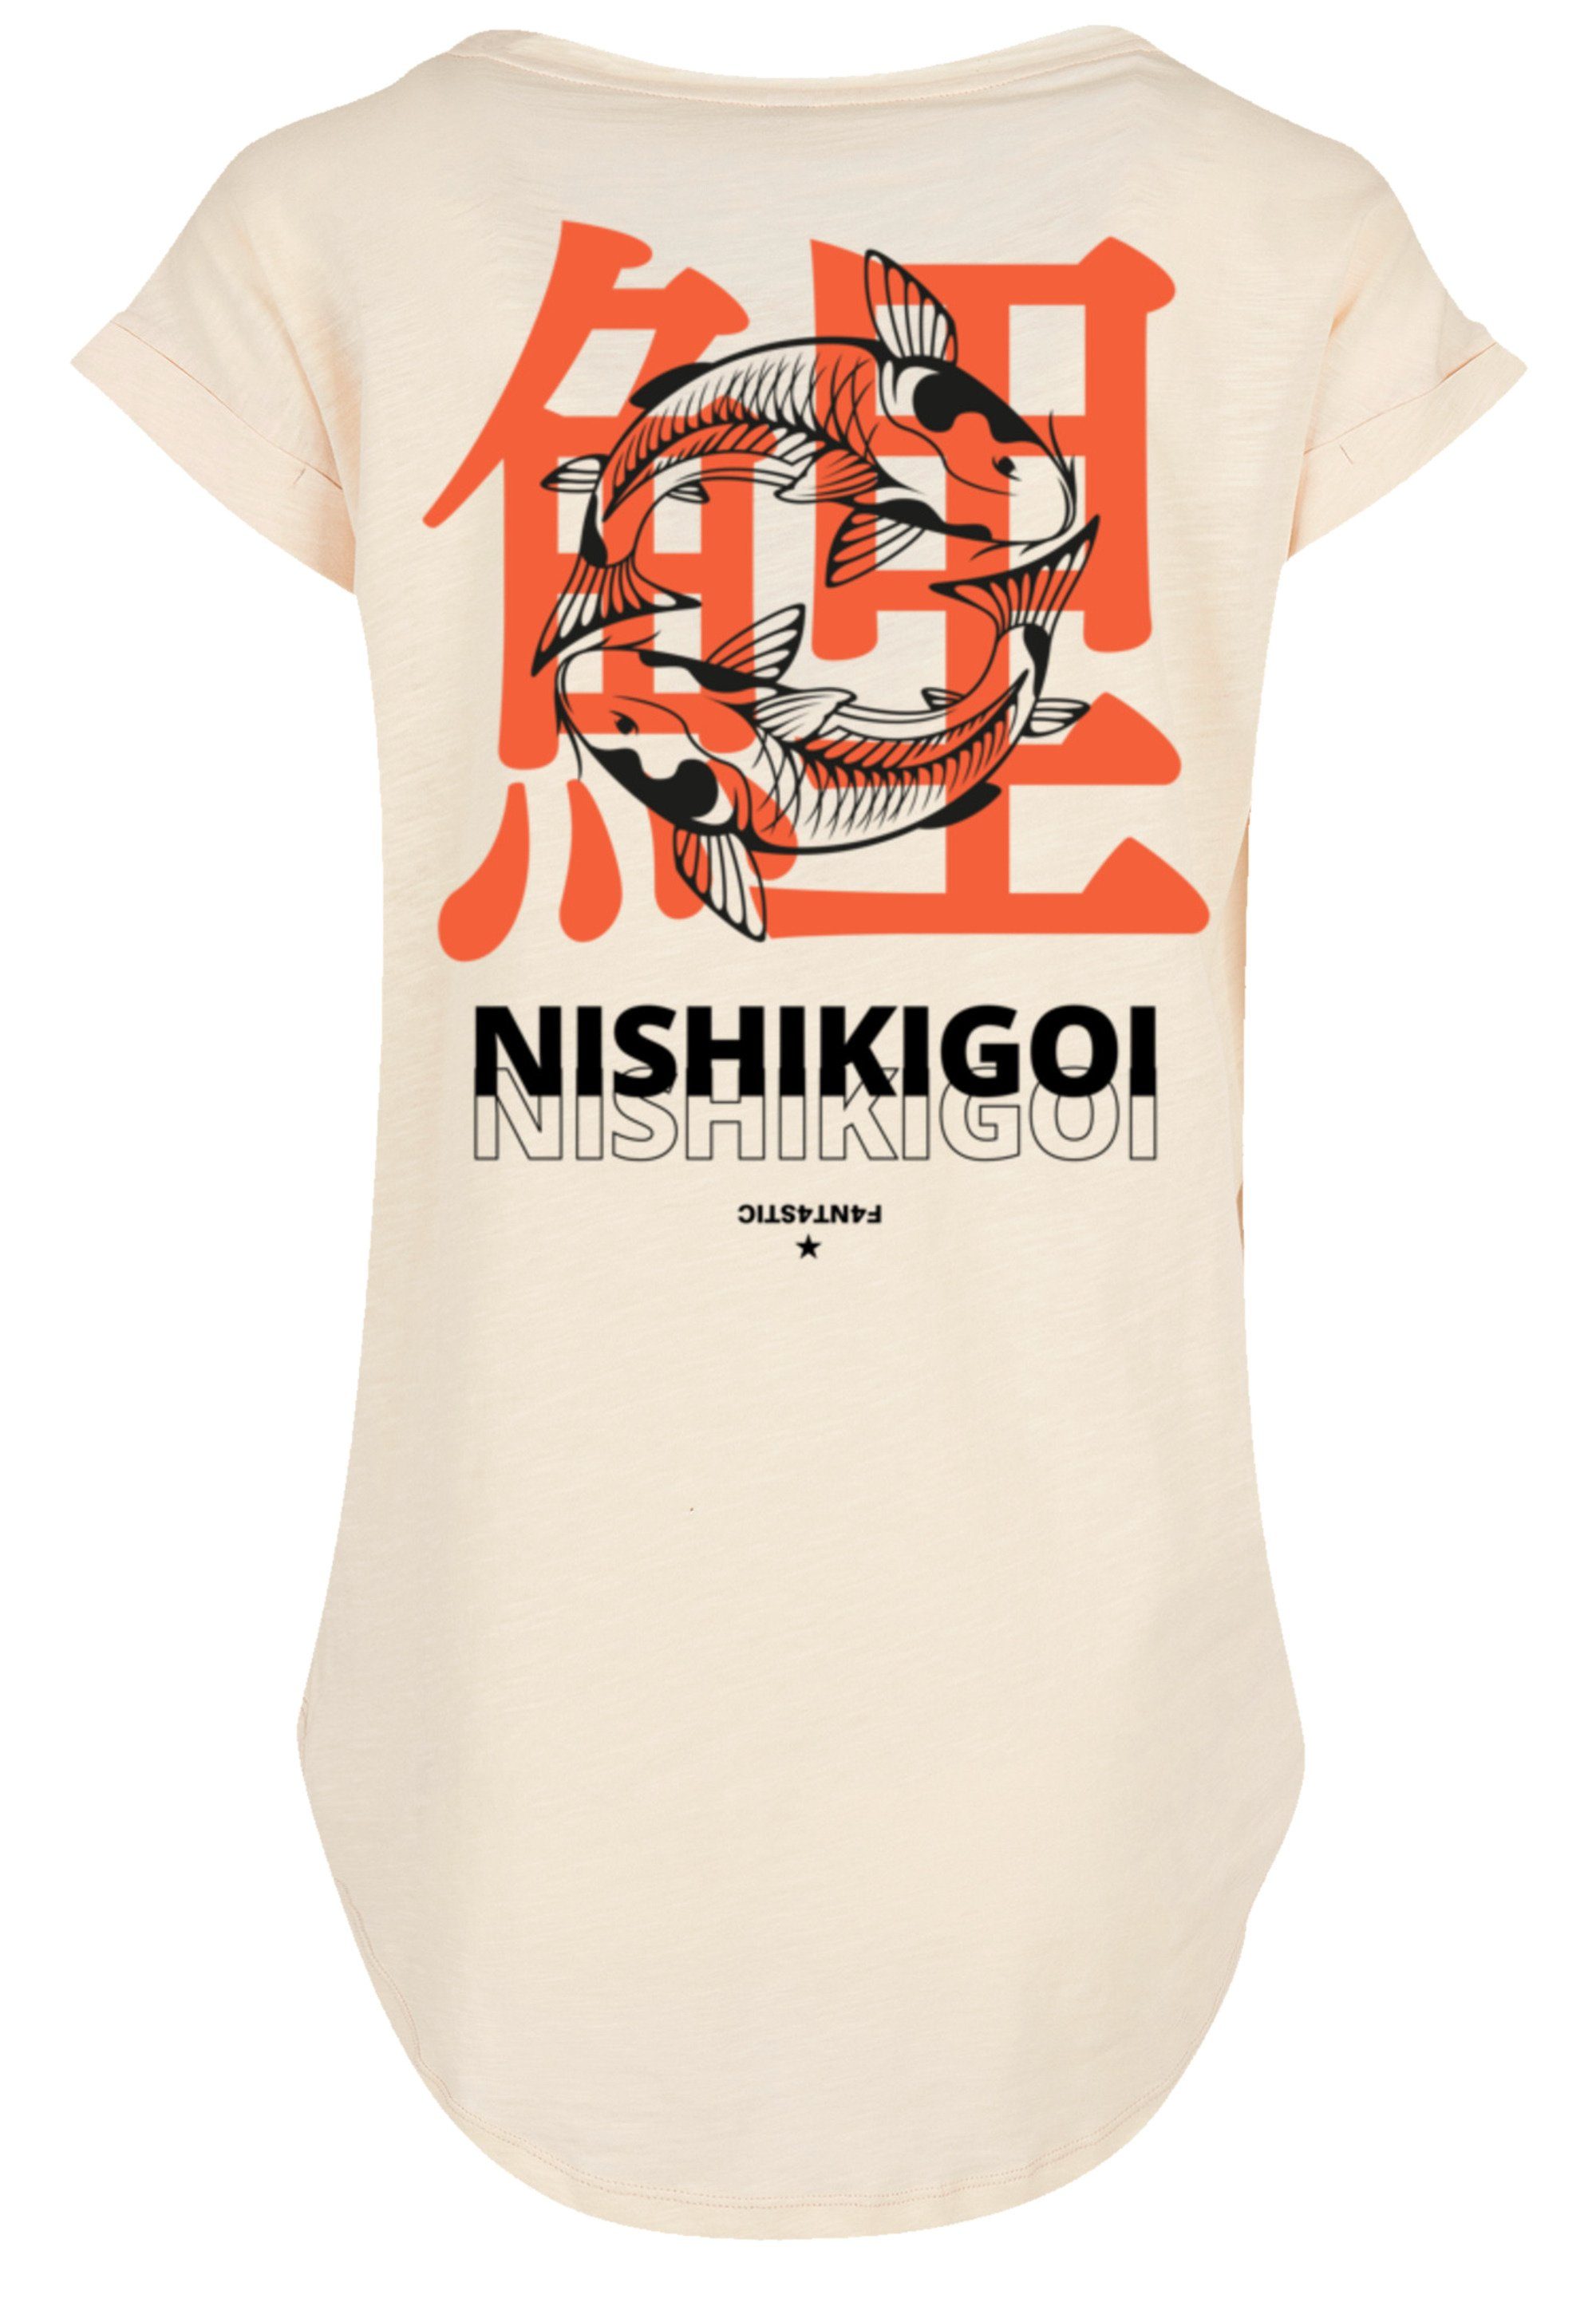 Grafik Japan Koi Baumwollstoff F4NT4STIC mit Print, T-Shirt Sehr Nishikigoi hohem weicher Tragekomfort